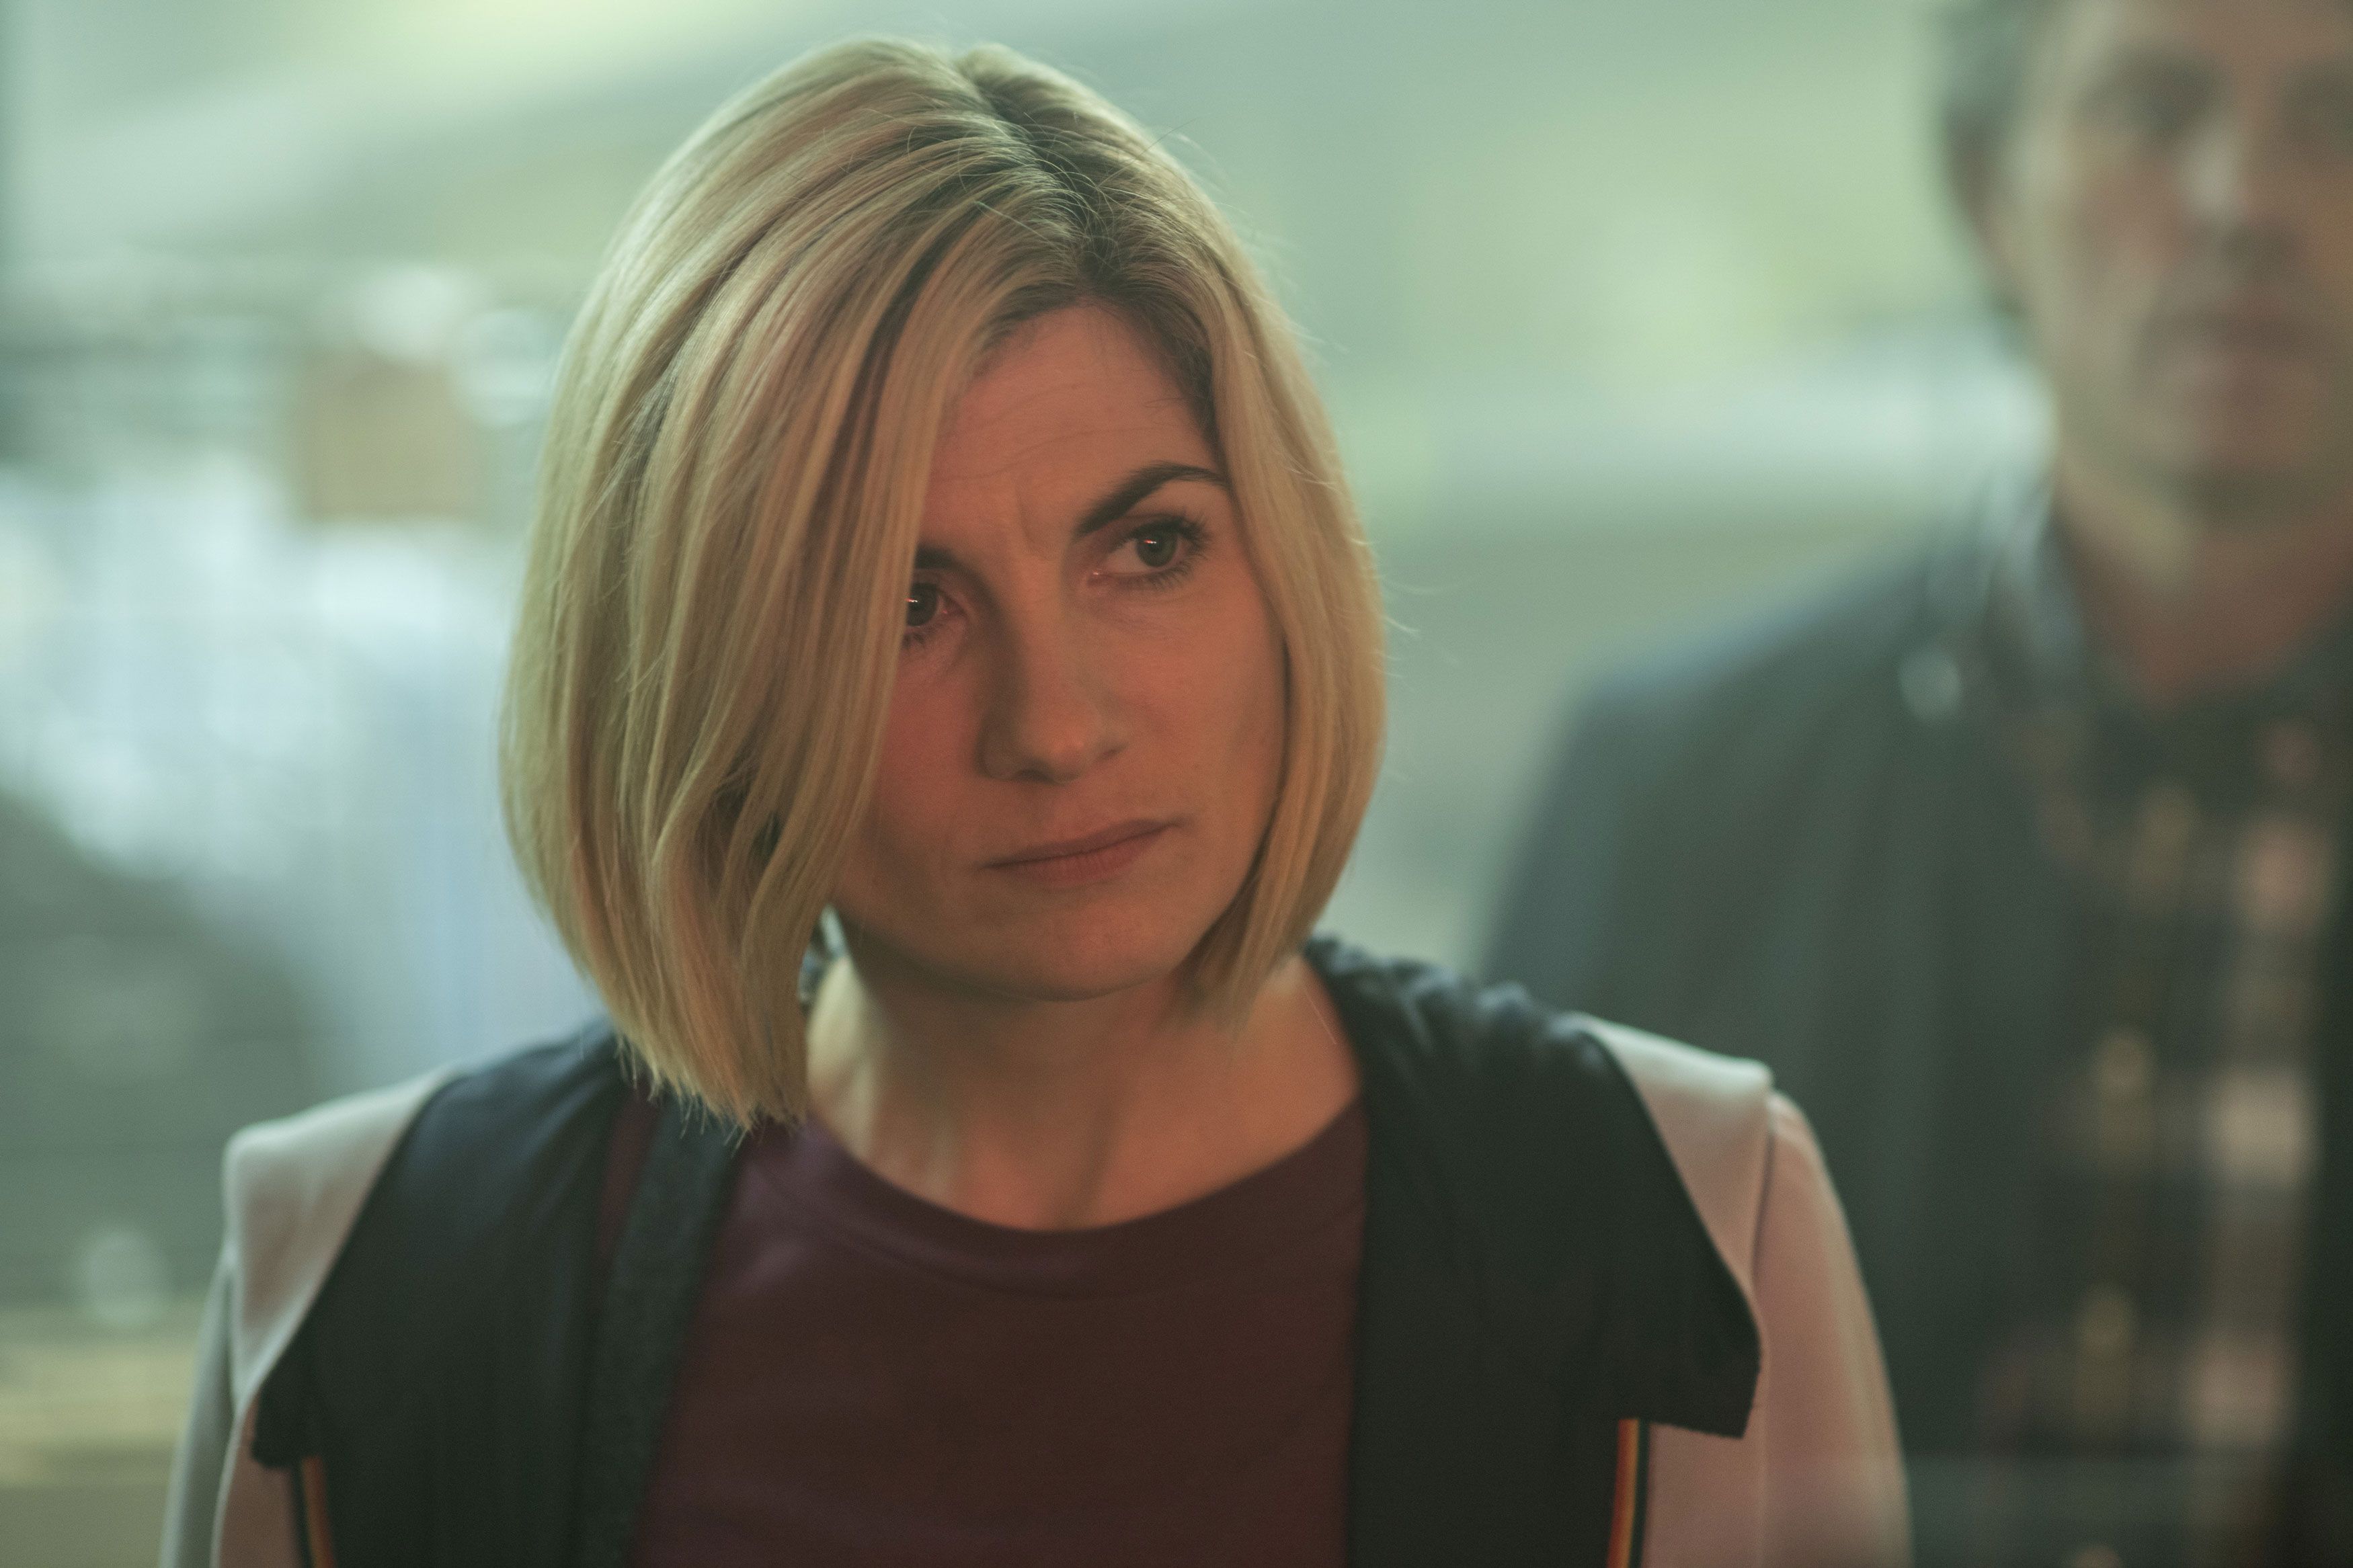 Doctor Who saison 13 : Jodie Whittaker bientôt remplacée par